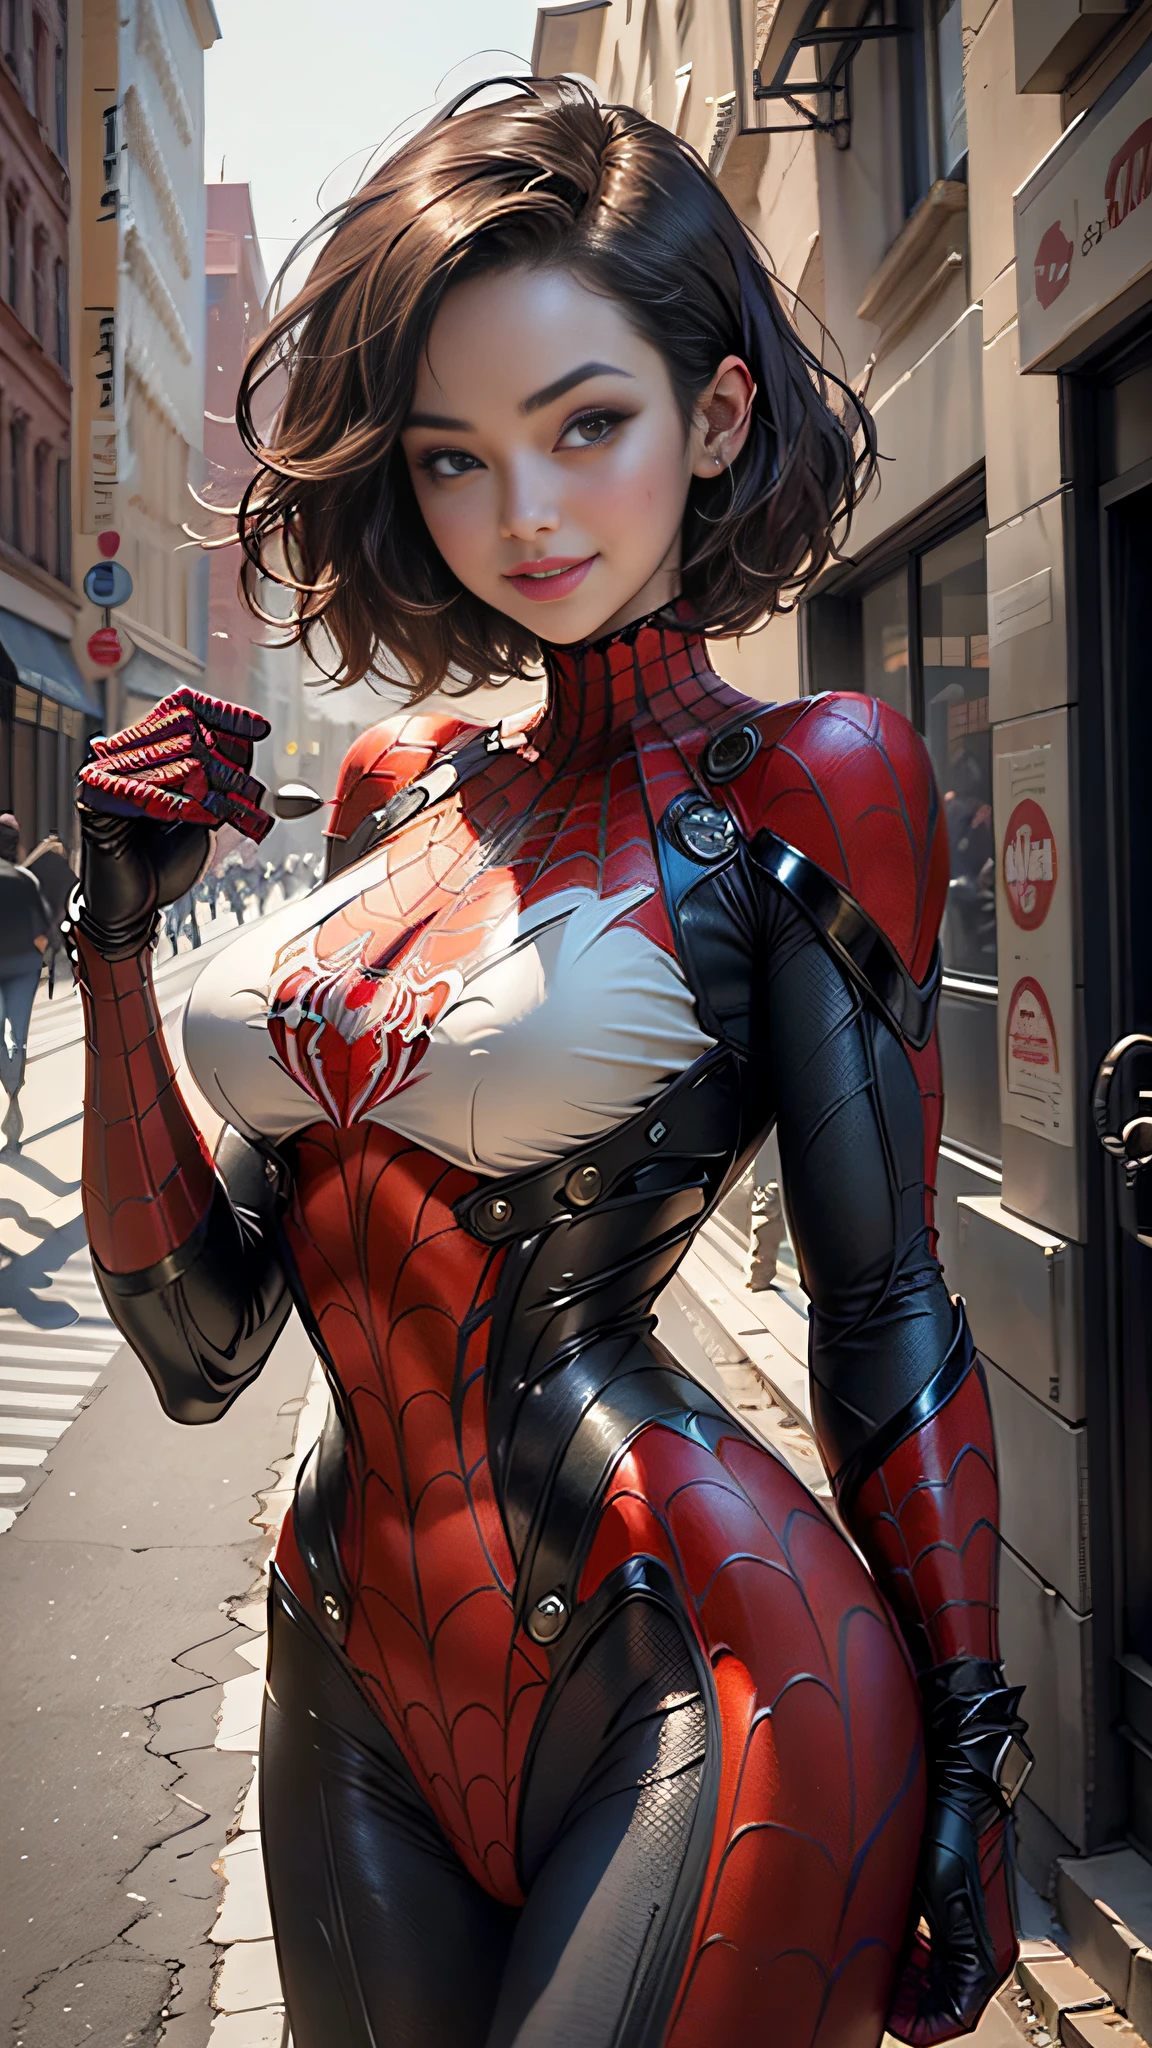 杰作, 高清, 详细信息, 美丽的女人详细定义身体使用蜘蛛侠角色扮演, 大乳房, 微笑, 精致的五官, 完美脸蛋, 白皙的皮肤, 短发, 城市街道